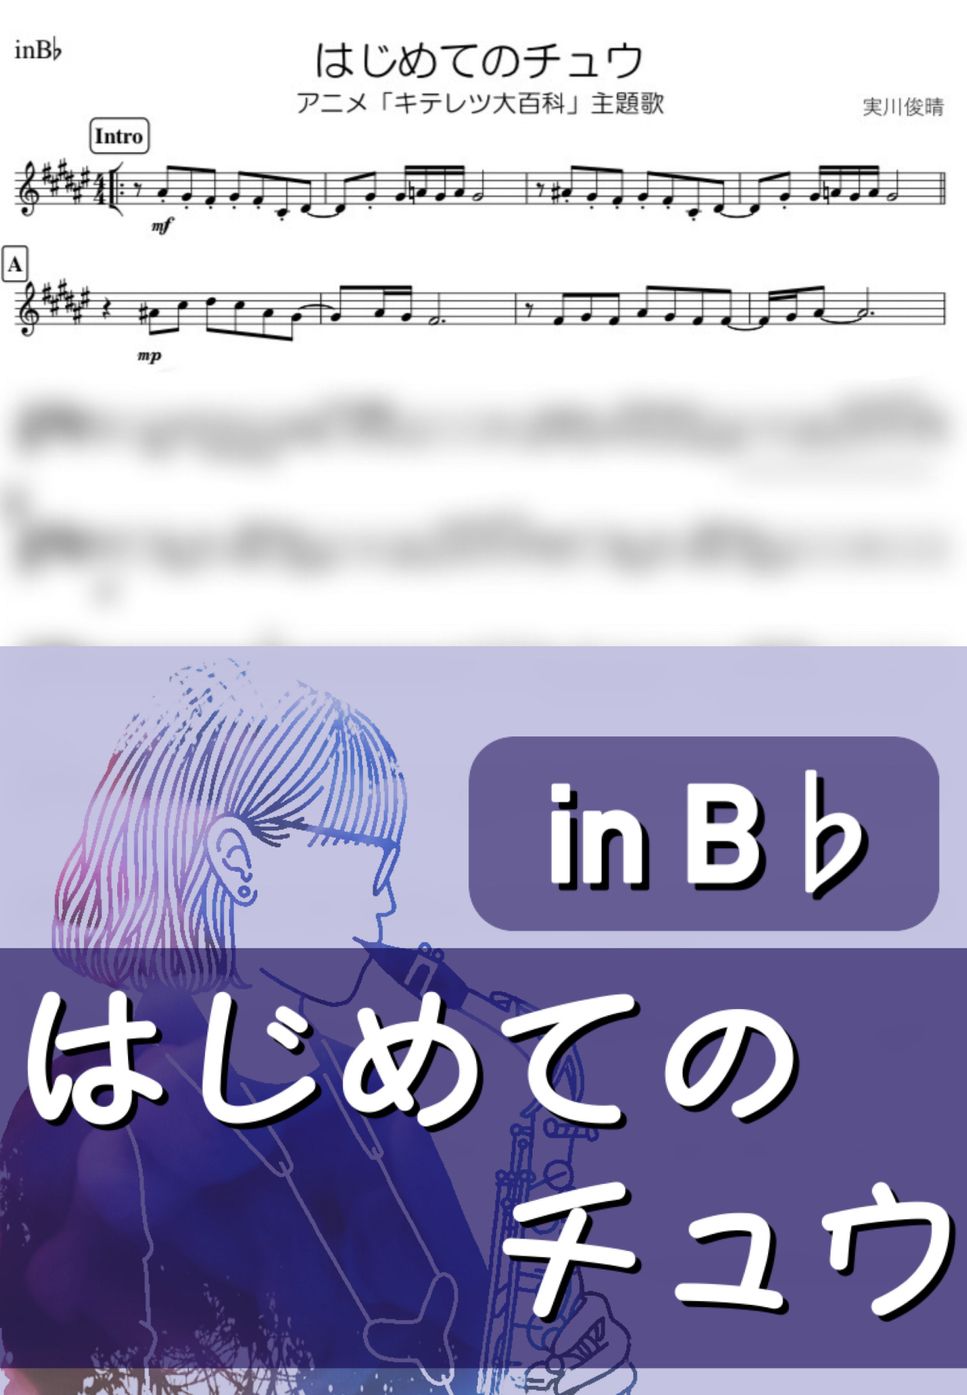 キテレツ大百科 - はじめてのチュウ (B♭) by kanamusic